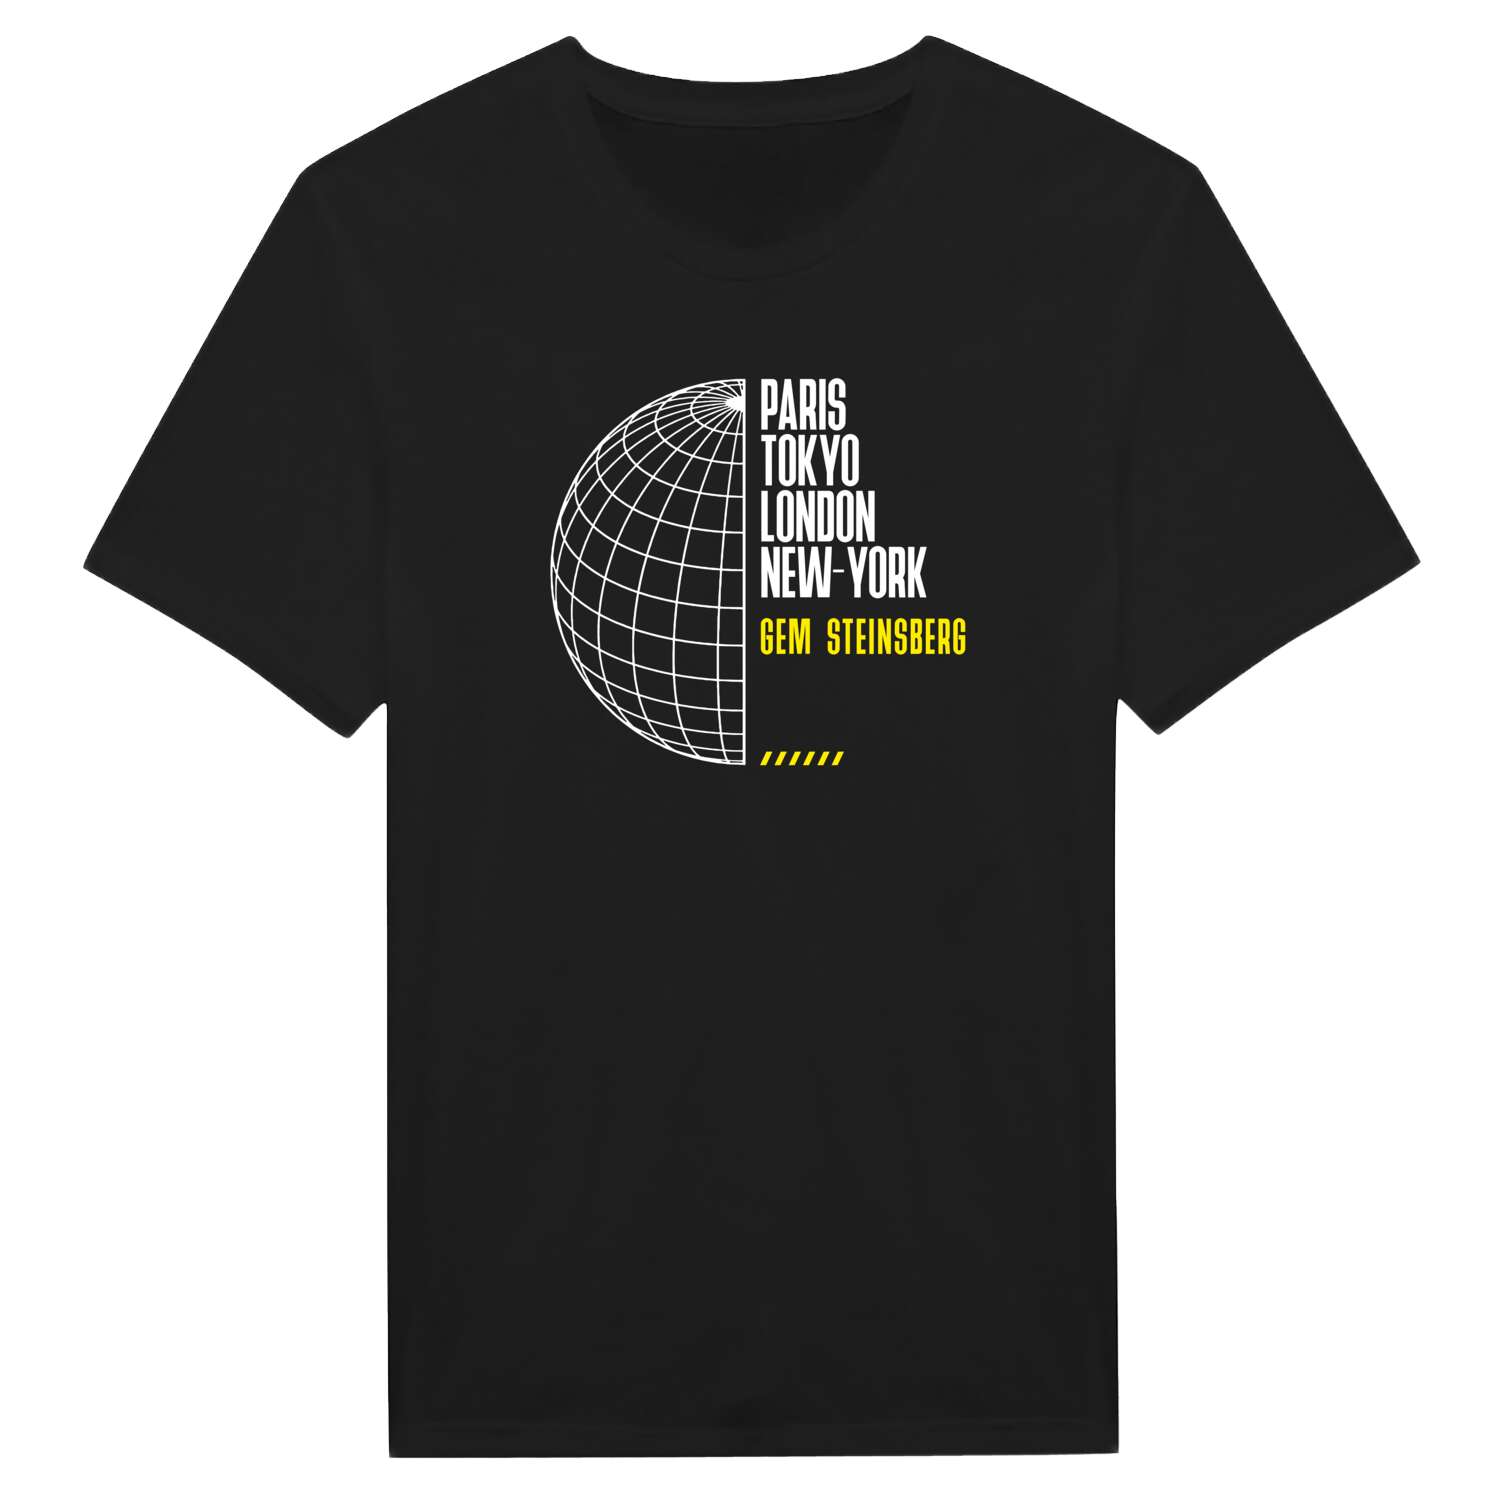 Gem Steinsberg T-Shirt »Paris Tokyo London«